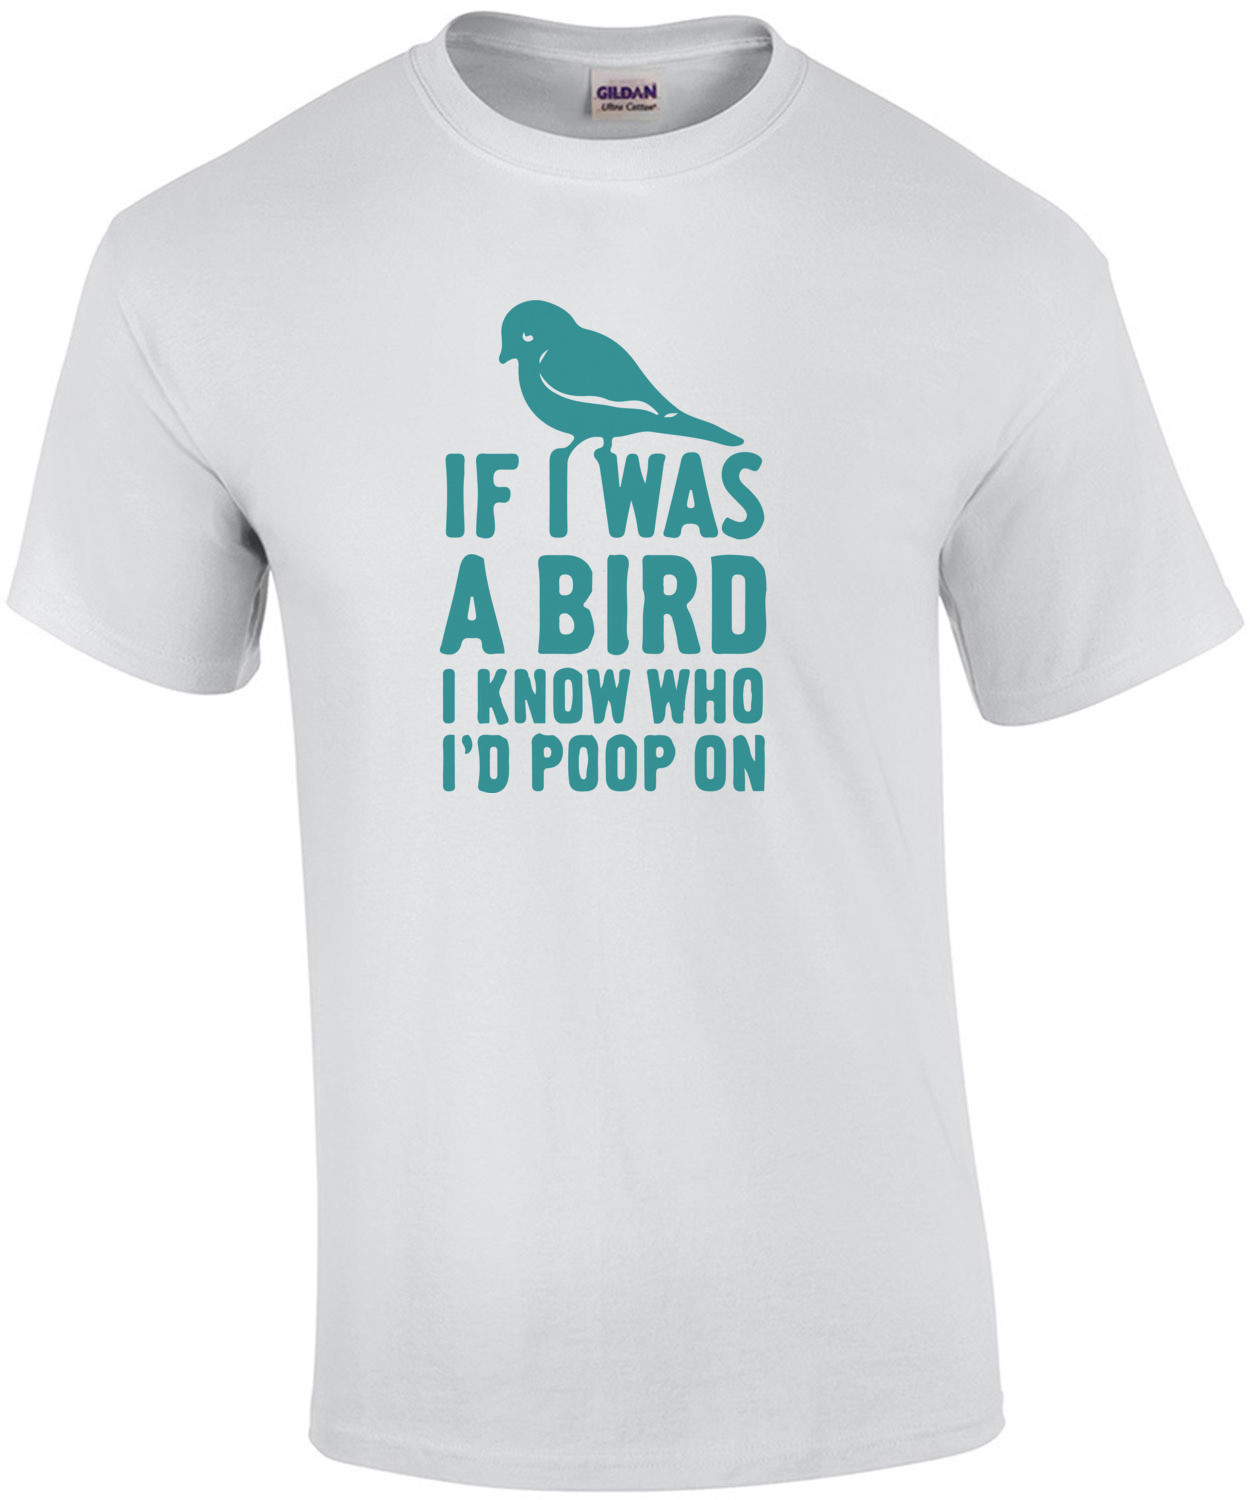 If I was a bird I know who I'd poop on T-Shirt